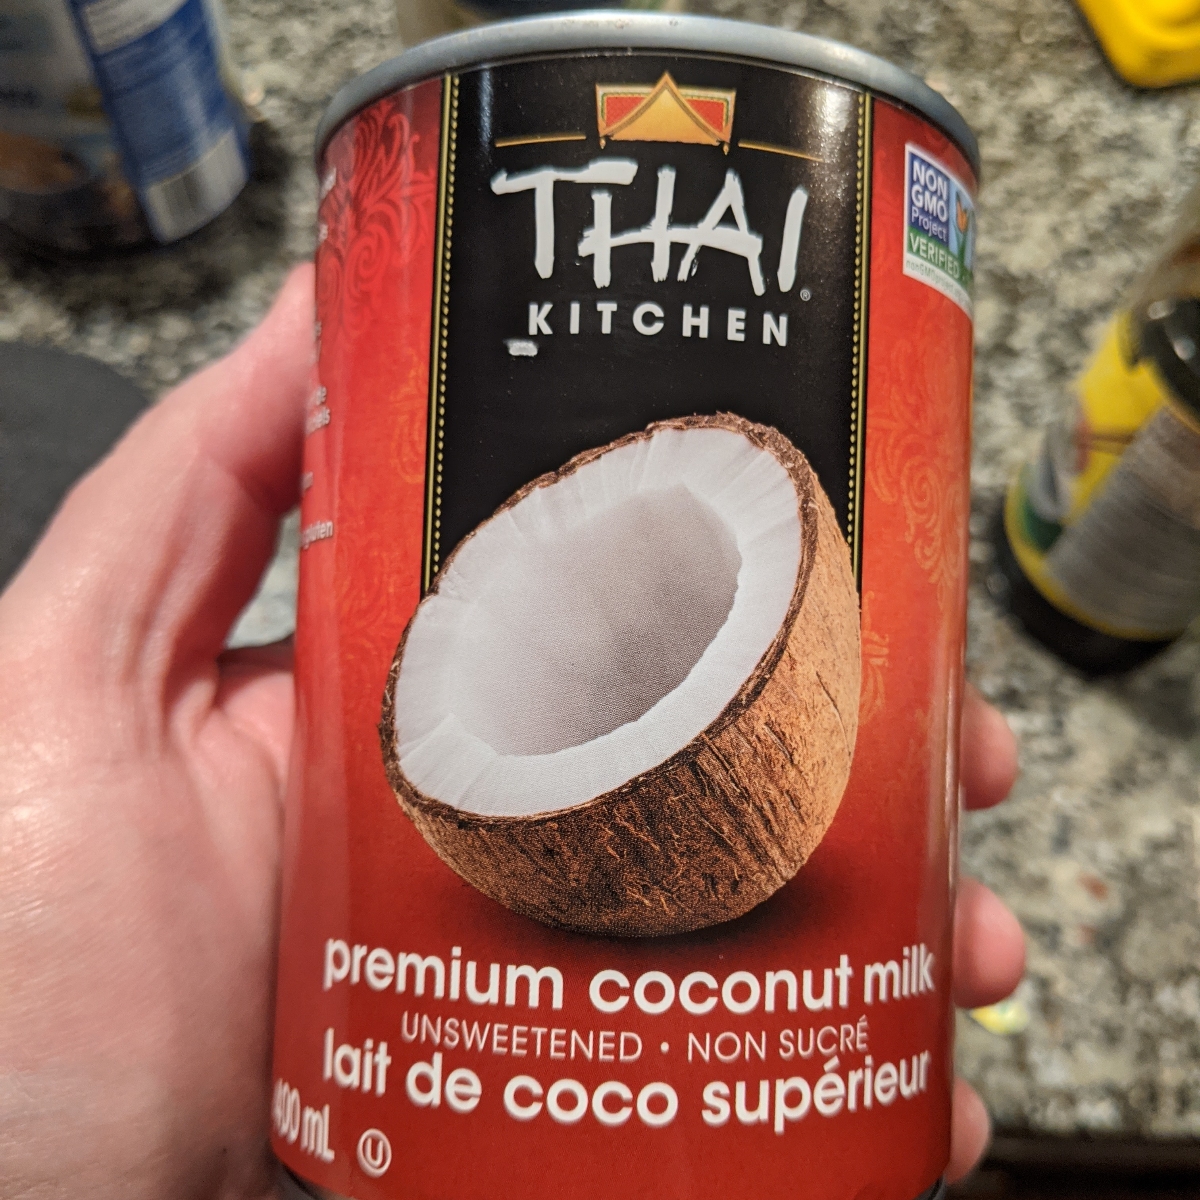 Thai Kitchen Coconut Milk Reviews